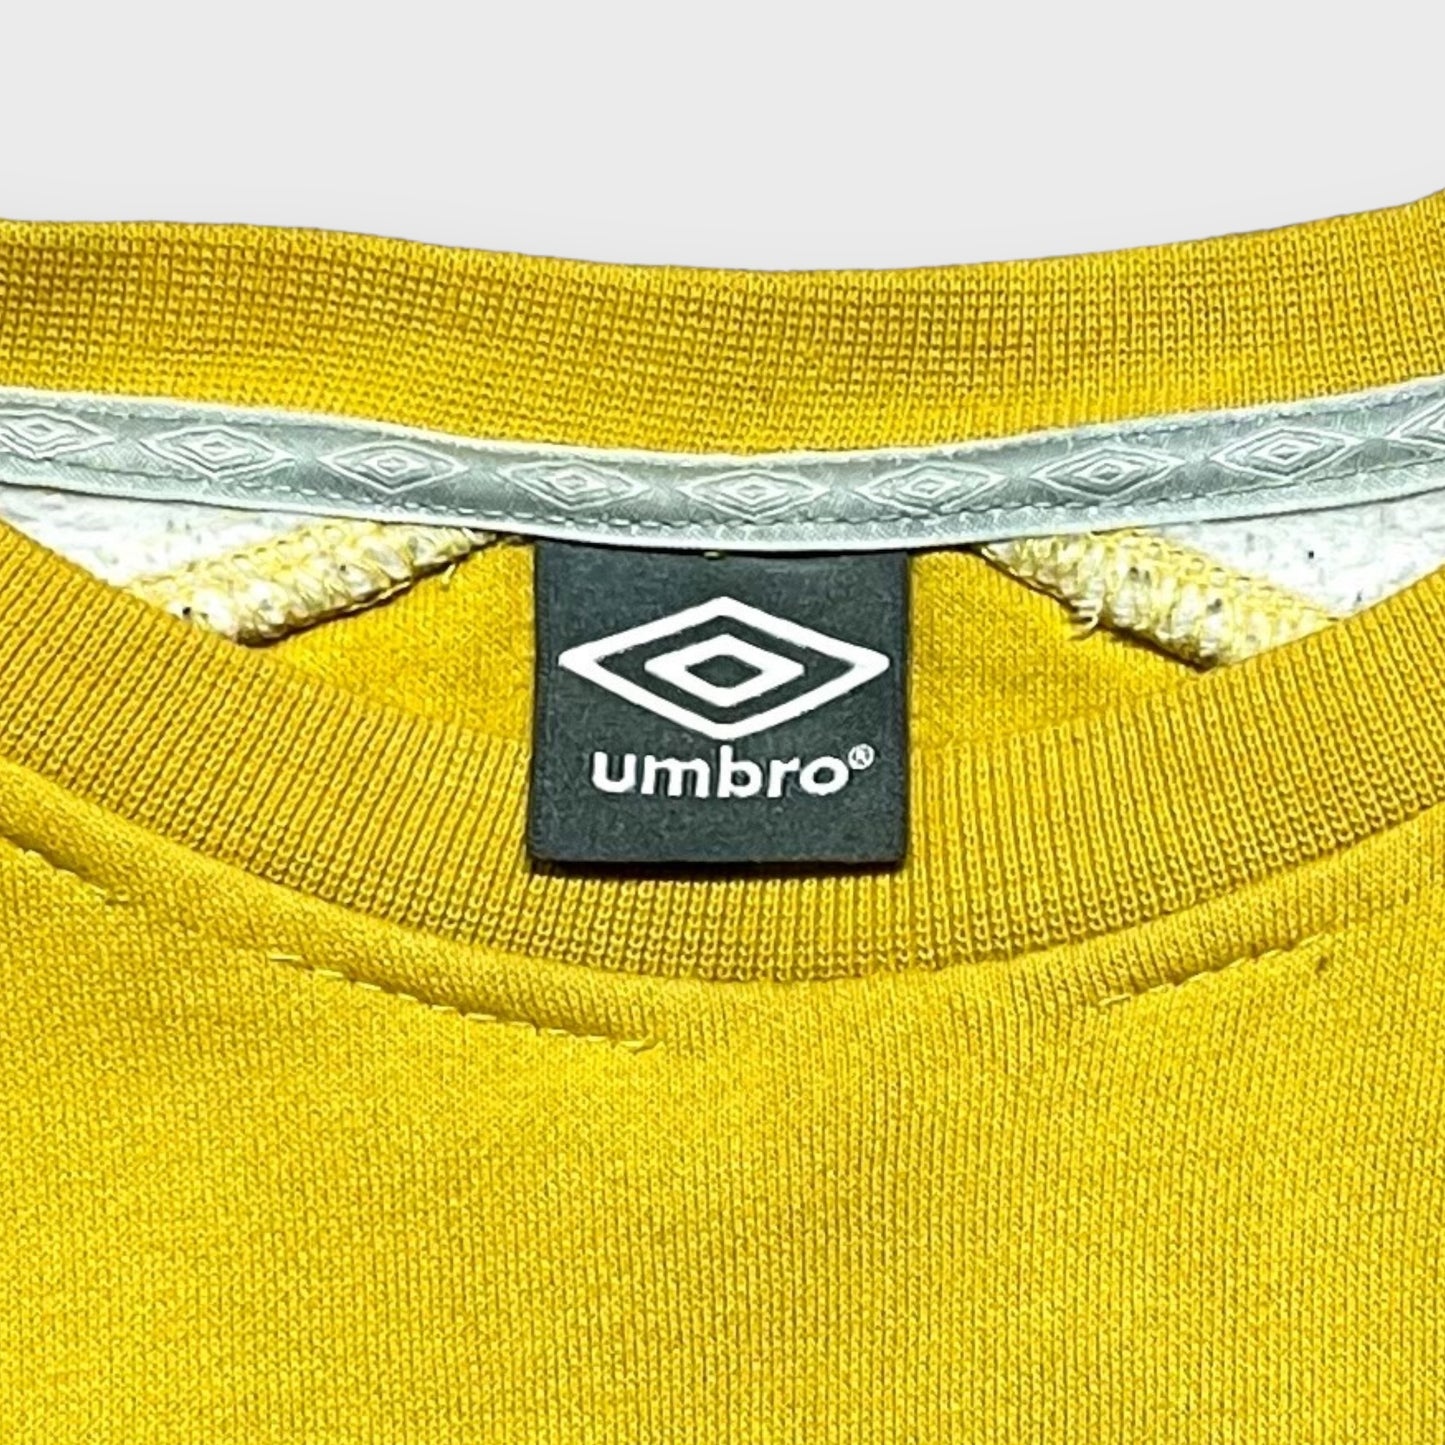 00's "umbro" Yellow color sweat